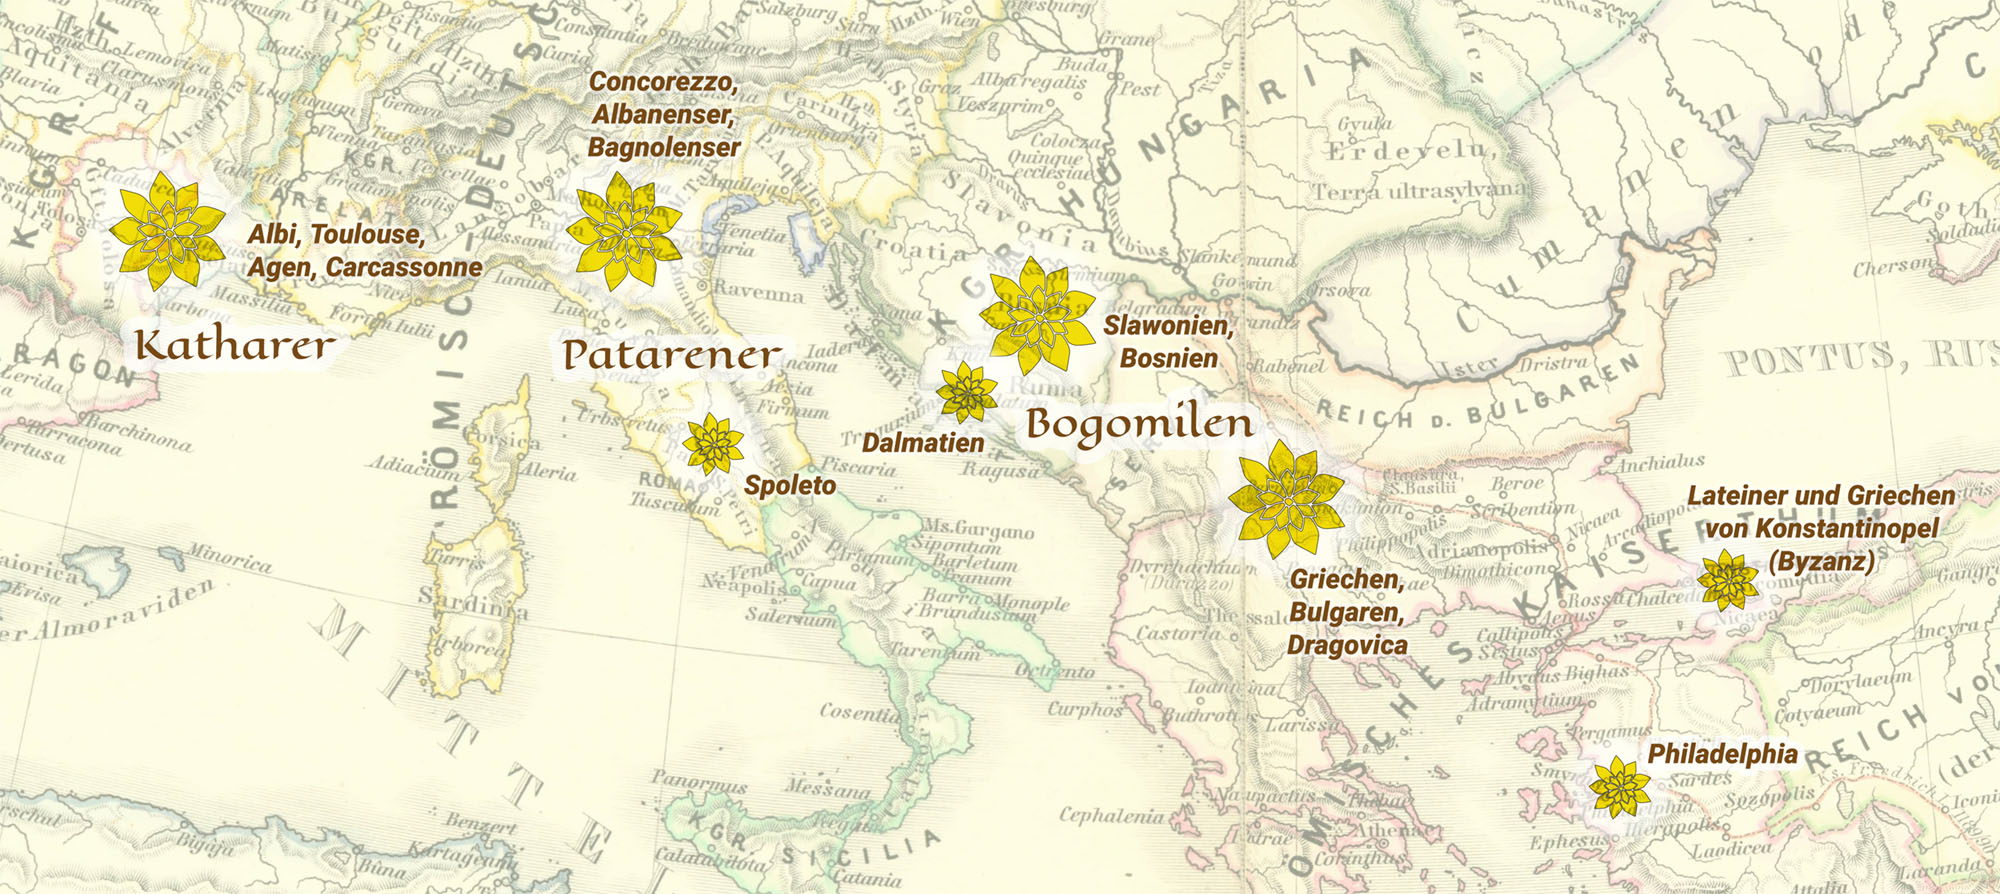 Zajednice Katara, Patarena i Bogumila u 13. stoljeću u južnoj Europi